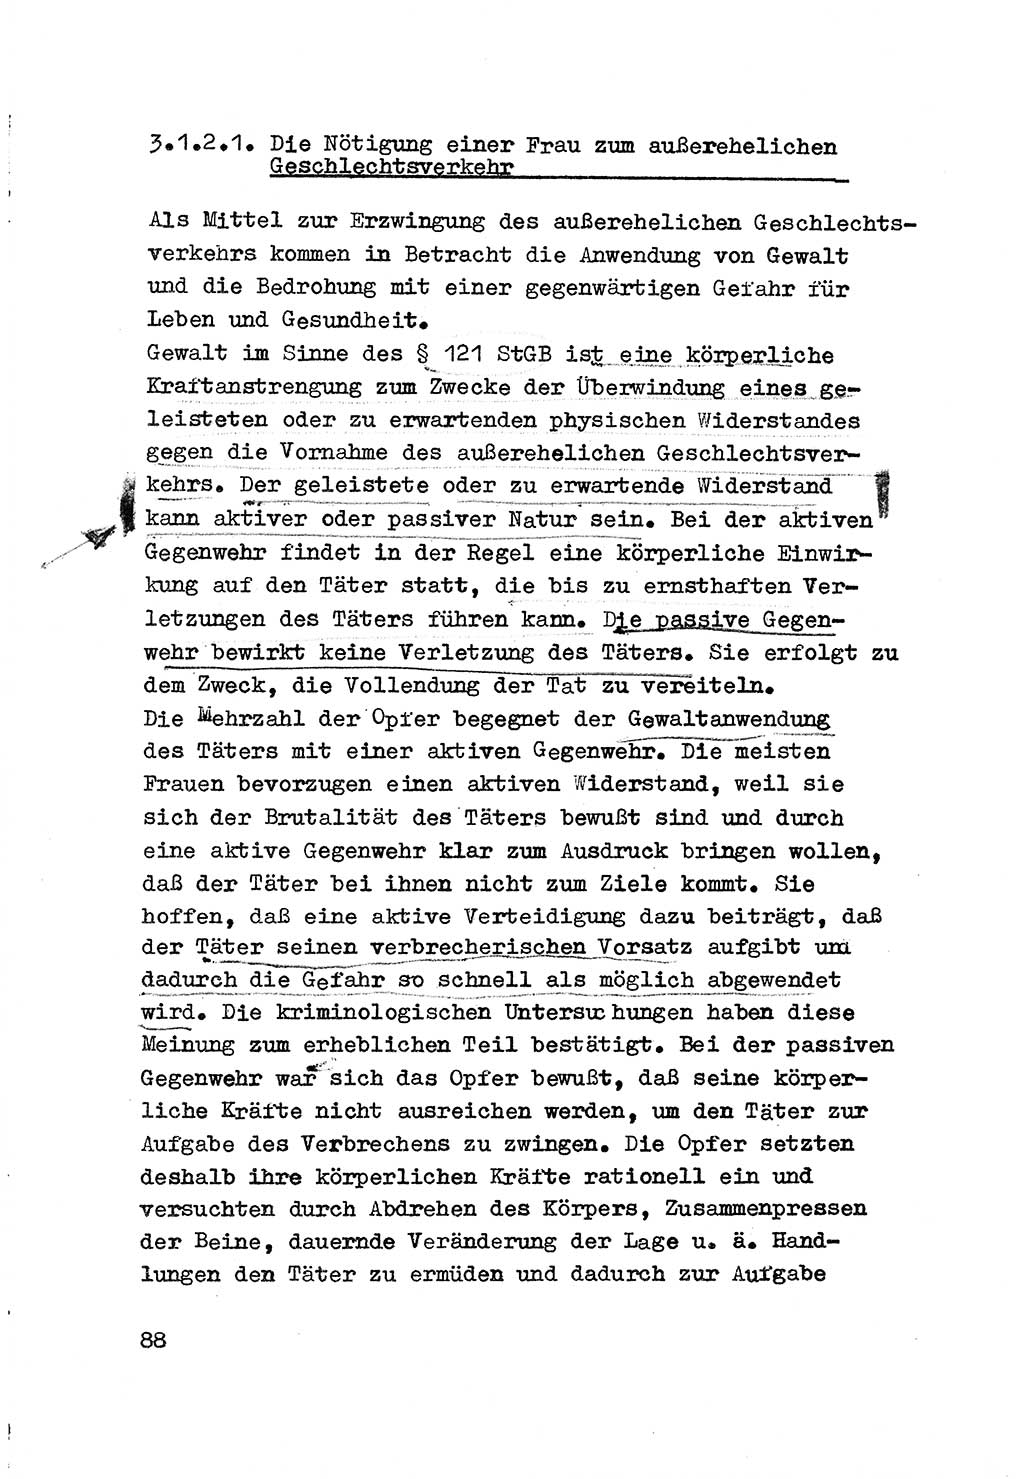 Strafrecht der DDR (Deutsche Demokratische Republik), Besonderer Teil, Lehrmaterial, Heft 3 1969, Seite 88 (Strafr. DDR BT Lehrmat. H. 3 1969, S. 88)